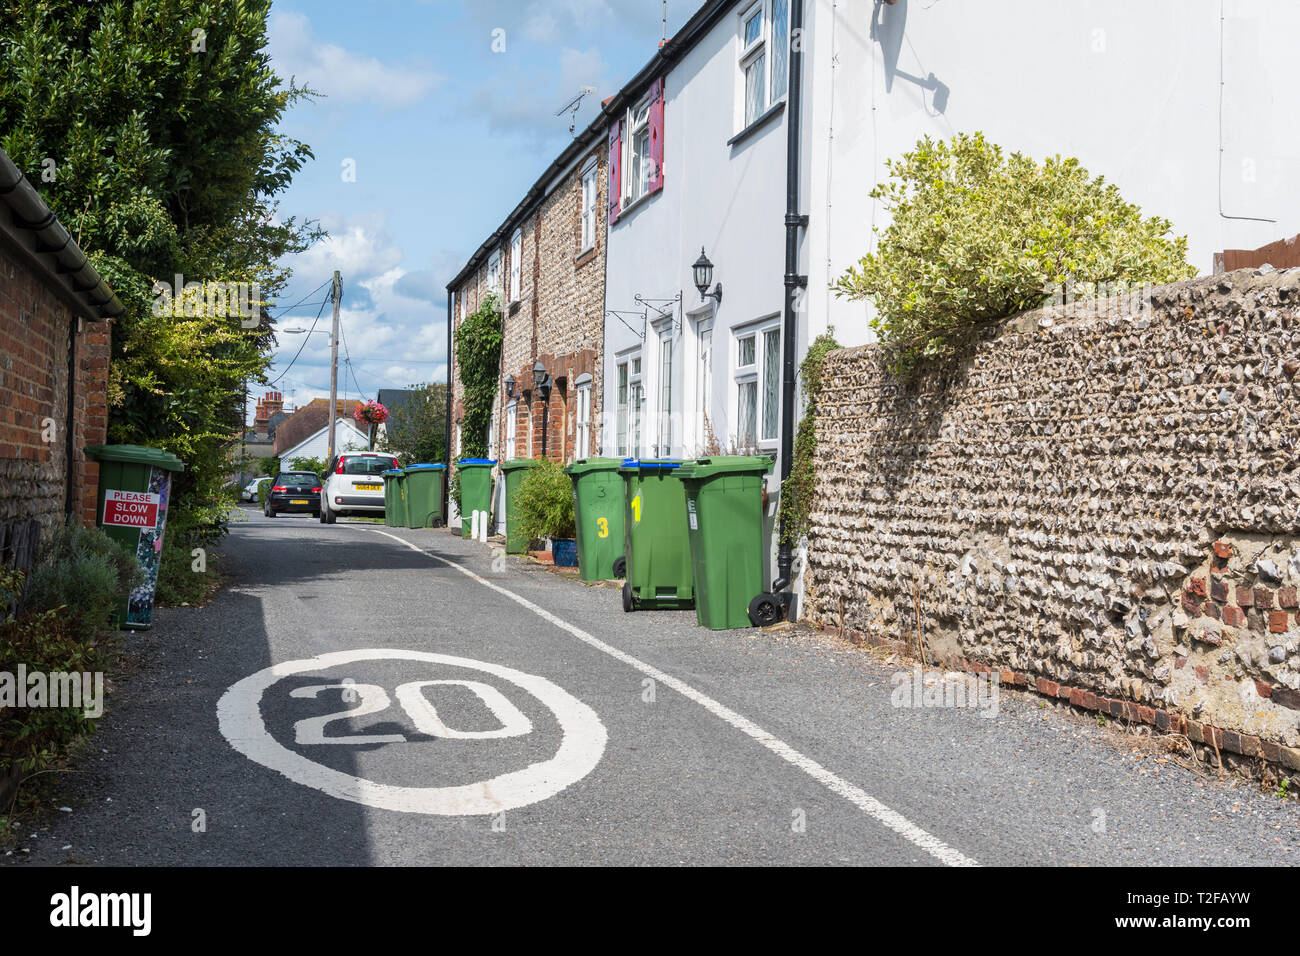 20 MPH Geschwindigkeitsbegrenzung Zeichen in einer schmalen Straße in einer britischen Stadt im oberen Beeding, West Sussex, UK gemalt. 20 MPH Höchstgeschwindigkeit in einer engen Straße. Stockfoto